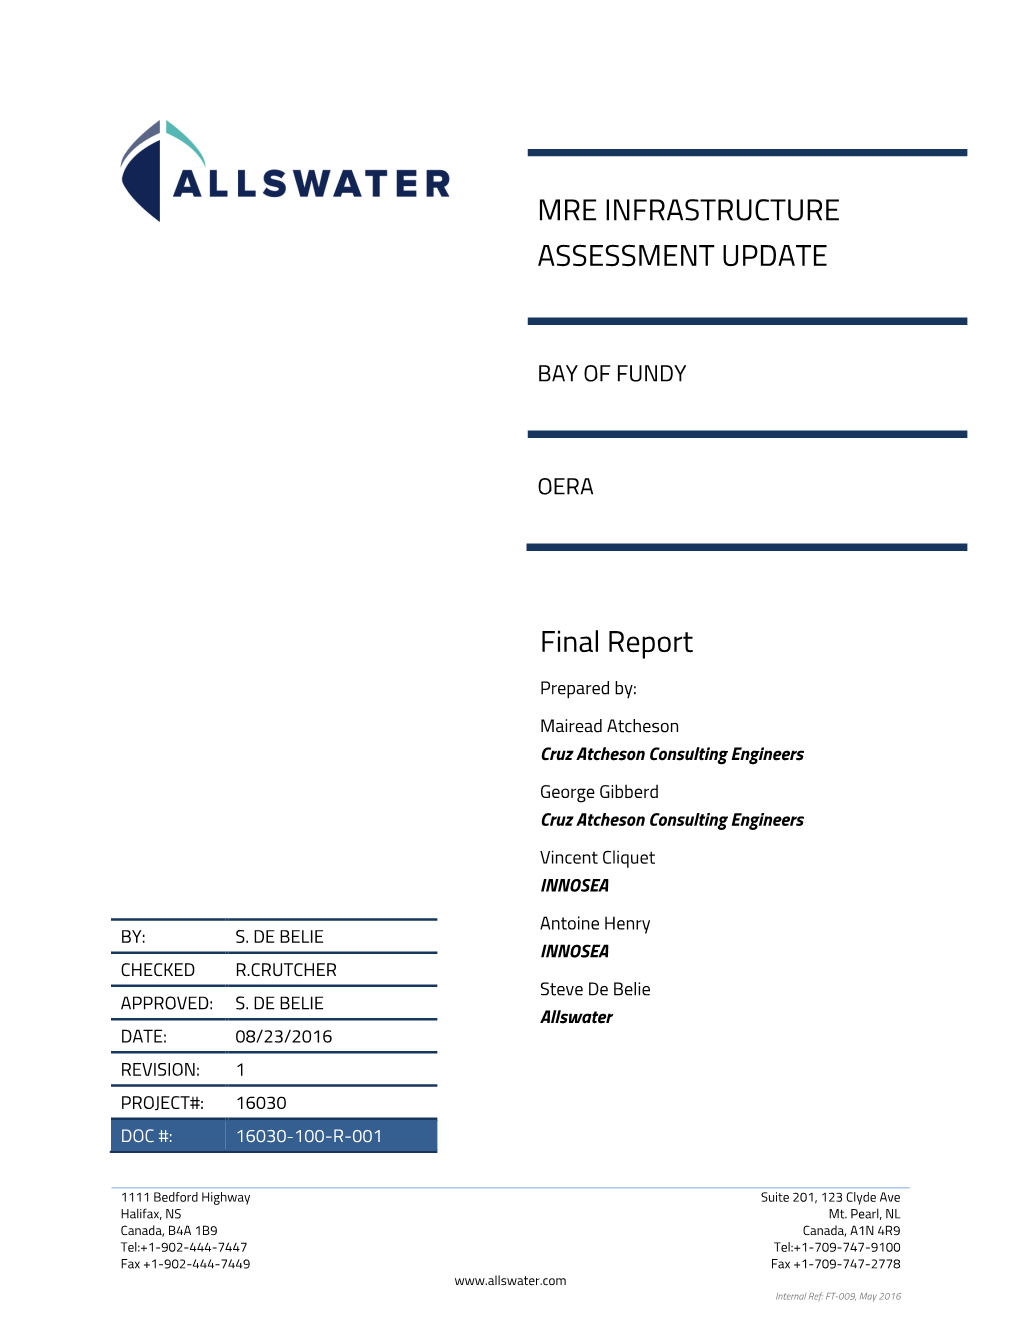 MRE INFRASTRUCTURE ASSESSMENT UPDATE Final Report